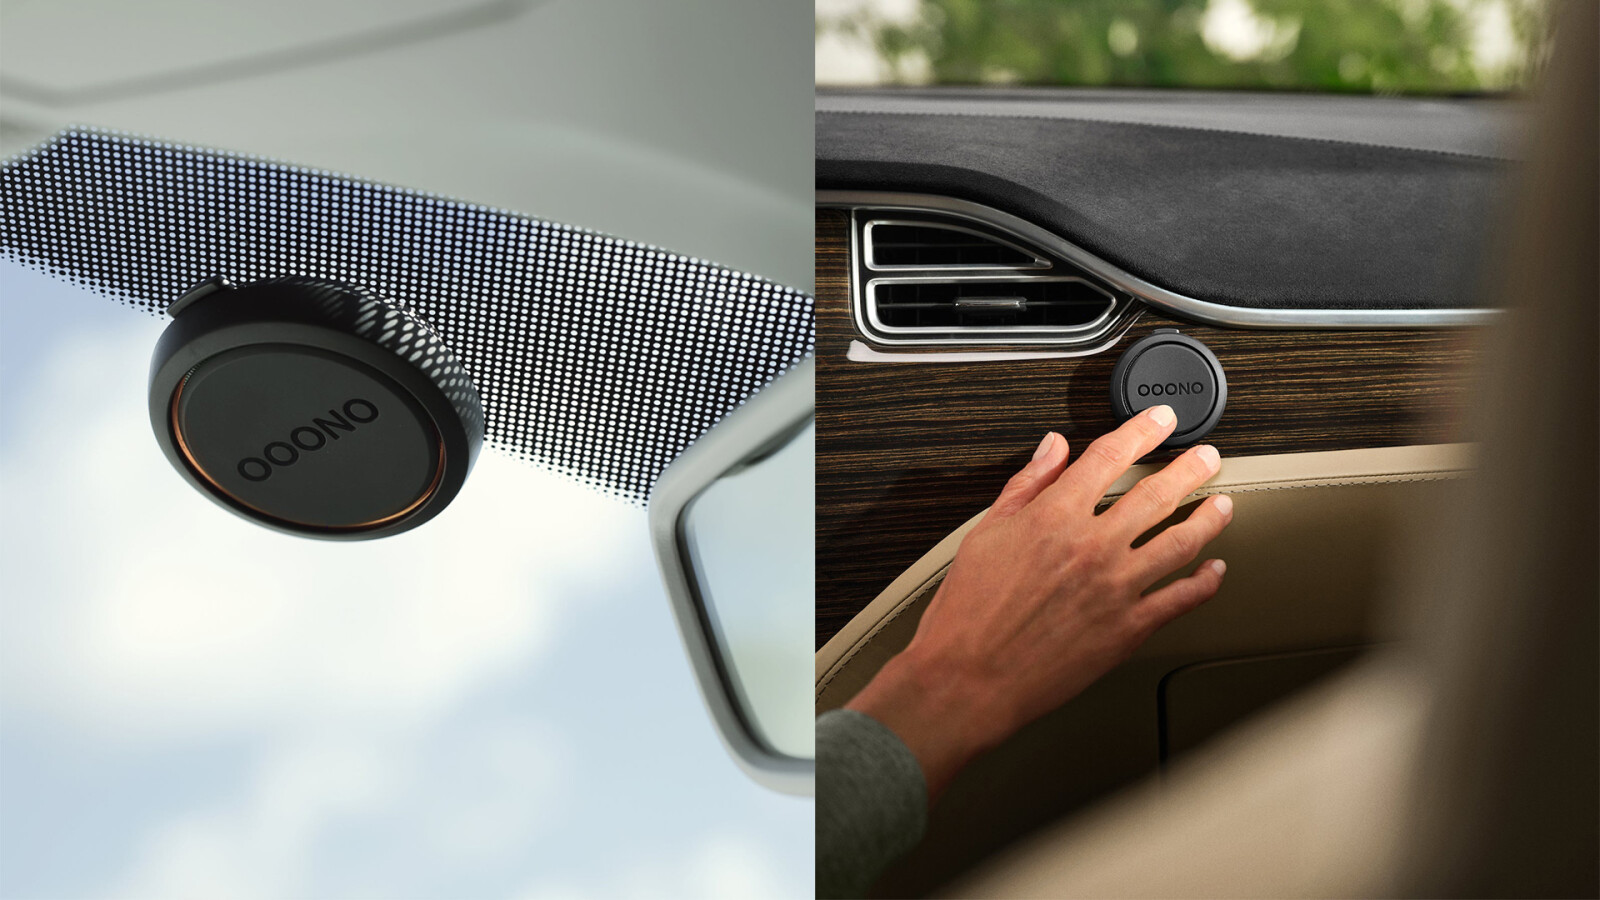 OOONO CO-Driver NO2 - Optimierter CO-Driver fürs Auto - Warnt vor Blitzern  und Gefahrenstellen - Wiederaufladbar - LED-Anzeige - CarPlay & Android  Auto kompatibel: : Elektronik & Foto